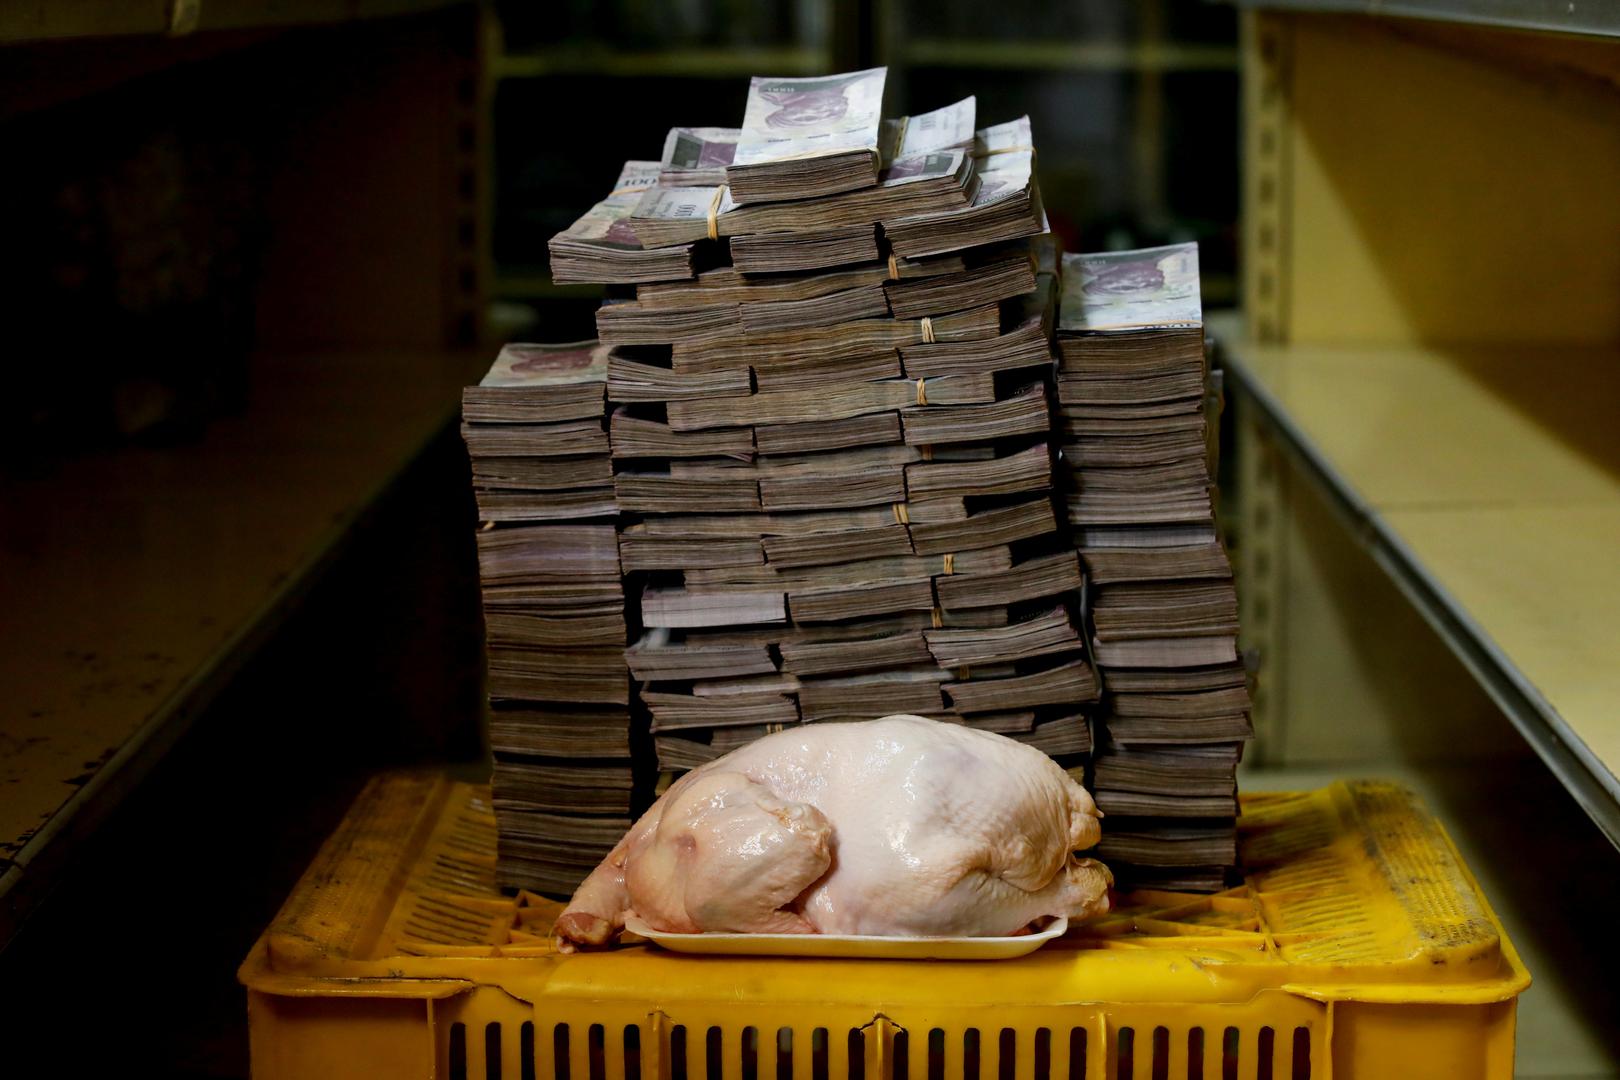 6 milijuna bolivara stoji kilogram piletine (za to je potrebno izdvojiti šest tisuća novčanica od tisuću bolivara). Kilogram rajčice je pet milijuna bolivara. Trenutačna hiperinflacija u Venezueli iznosi 60 tisuća posto! Toliku hiperinflaciju imala je Srbija 1993. godine za vrijeme agresije na Hrvatsku i BiH